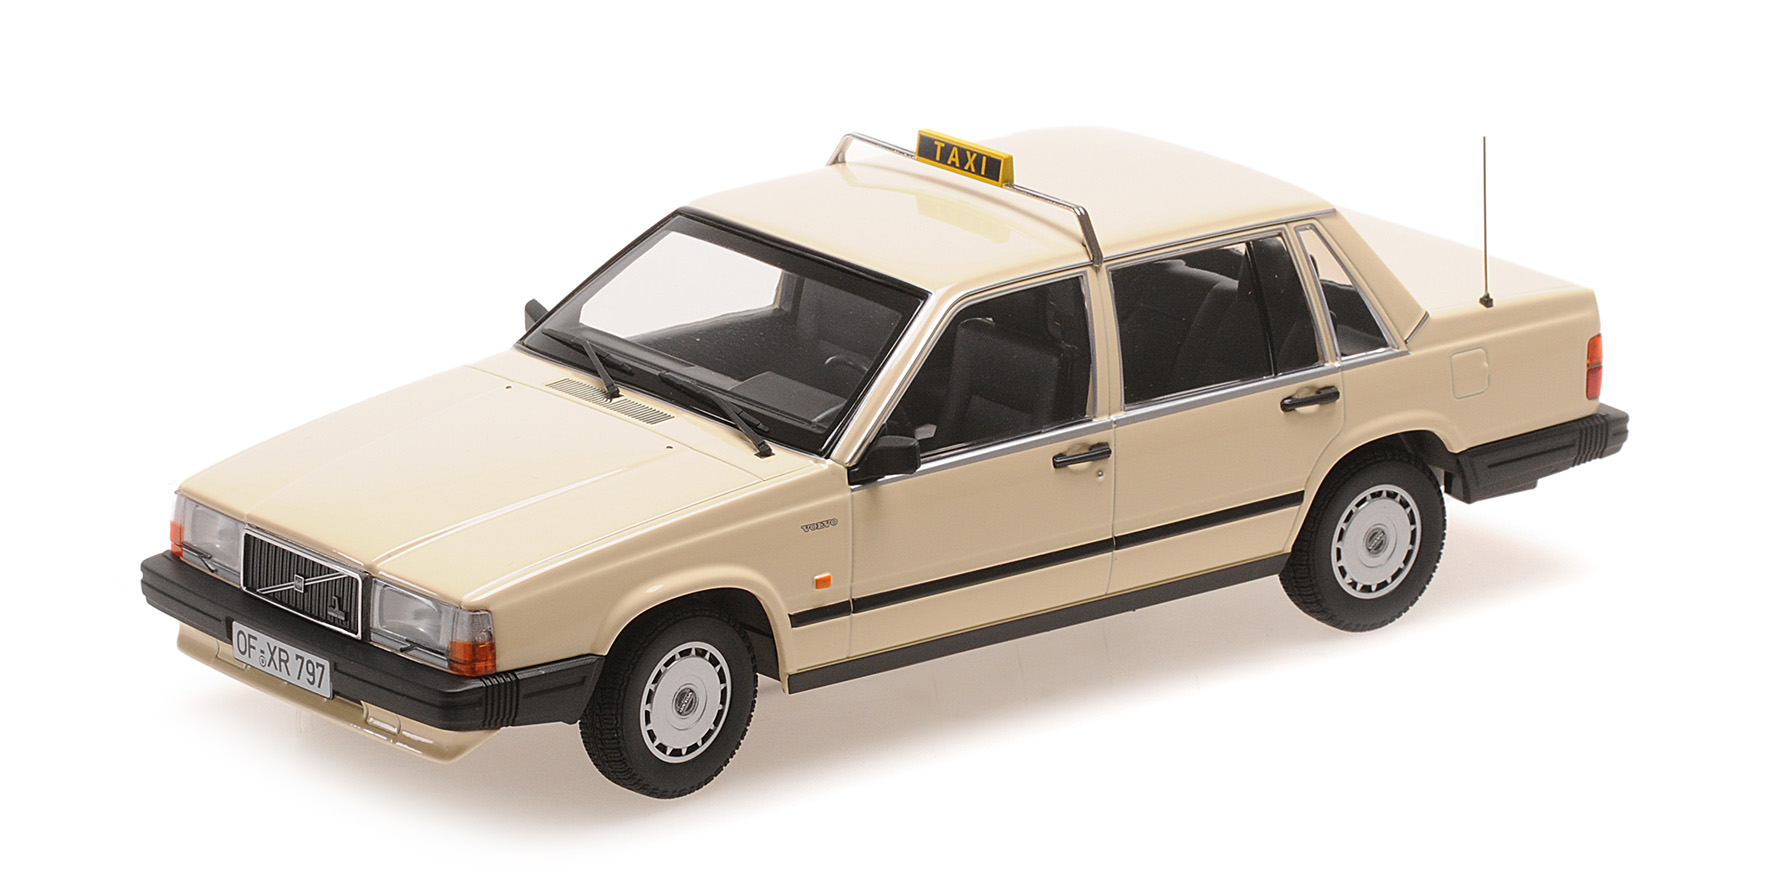 Volvo 740 GL`1986 Taxi German Germany 1:18 Die Cast